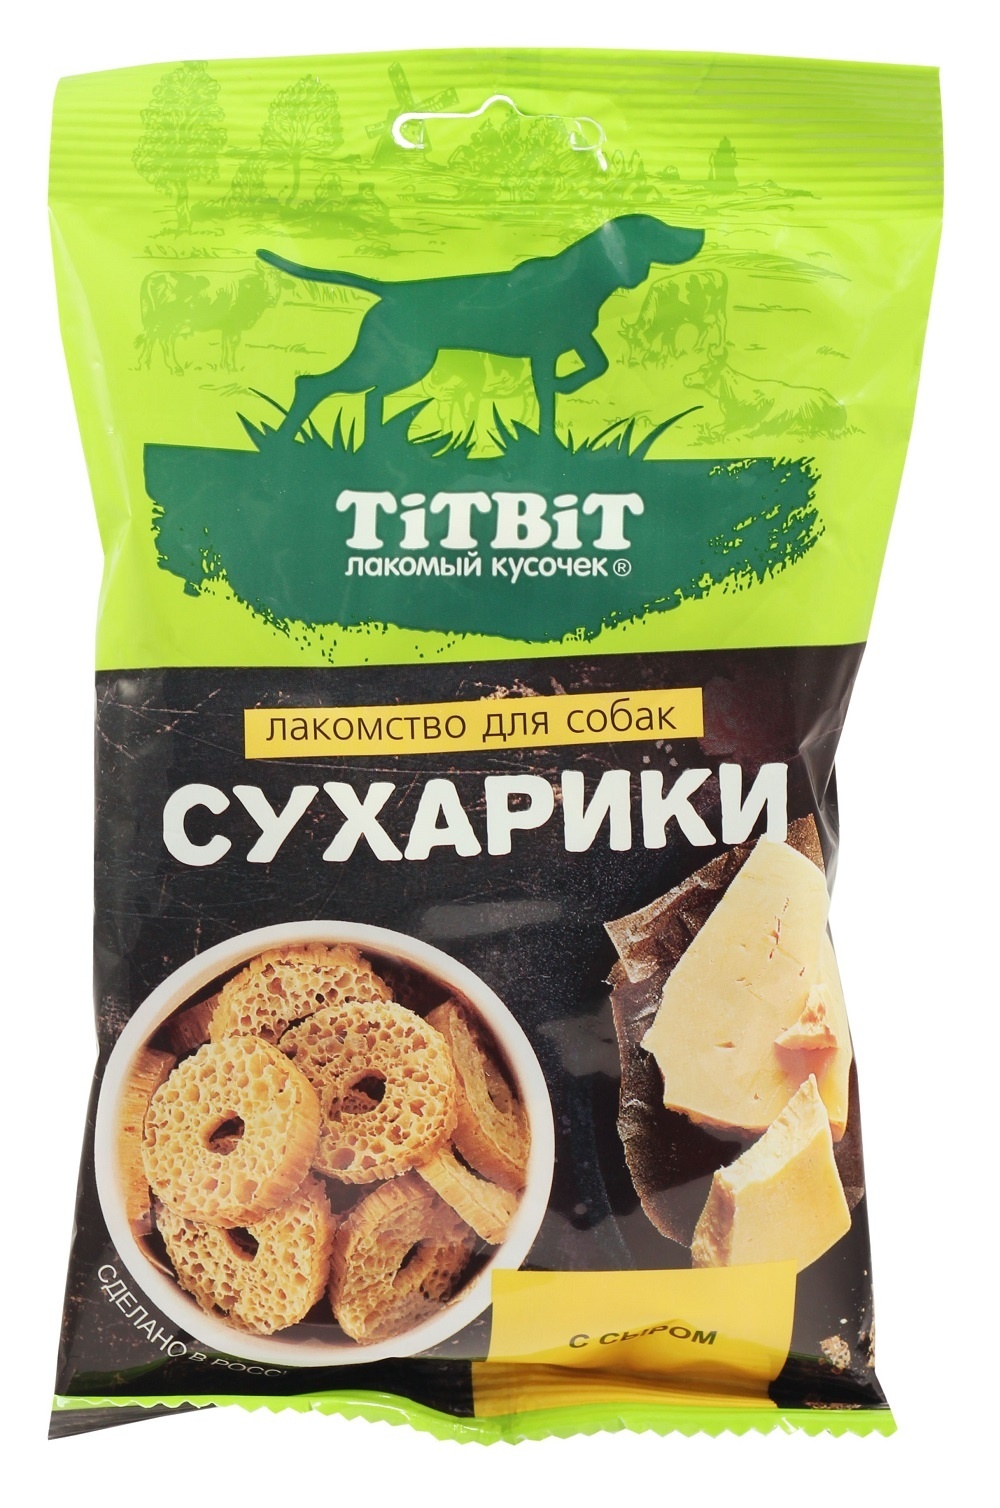 TiTBiT TiTBiT сухарики с сыром, лакомство для собак (55 г)